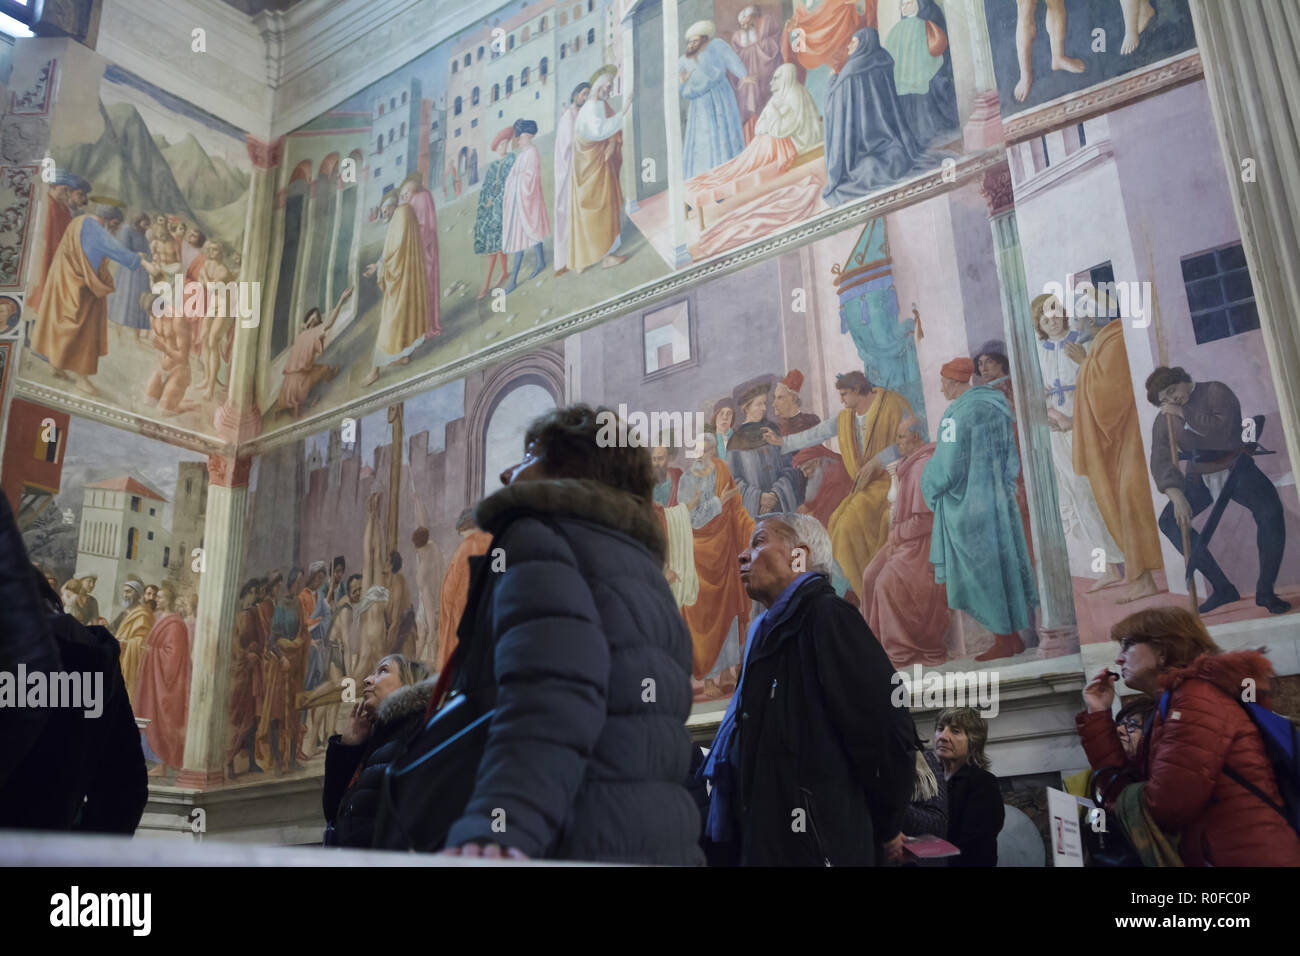 Les touristes visitent la Chapelle Brancacci (Chapelle Brancacci) dans l'église de Santa Maria del Carmine à Florence, Toscane, Italie. Fresques de Masaccio et peintres de la Renaissance italienne Masolino da Panicale (1420-1427) a achevé de Filippino Lippi (1485) sont vus dans l'arrière-plan. Banque D'Images